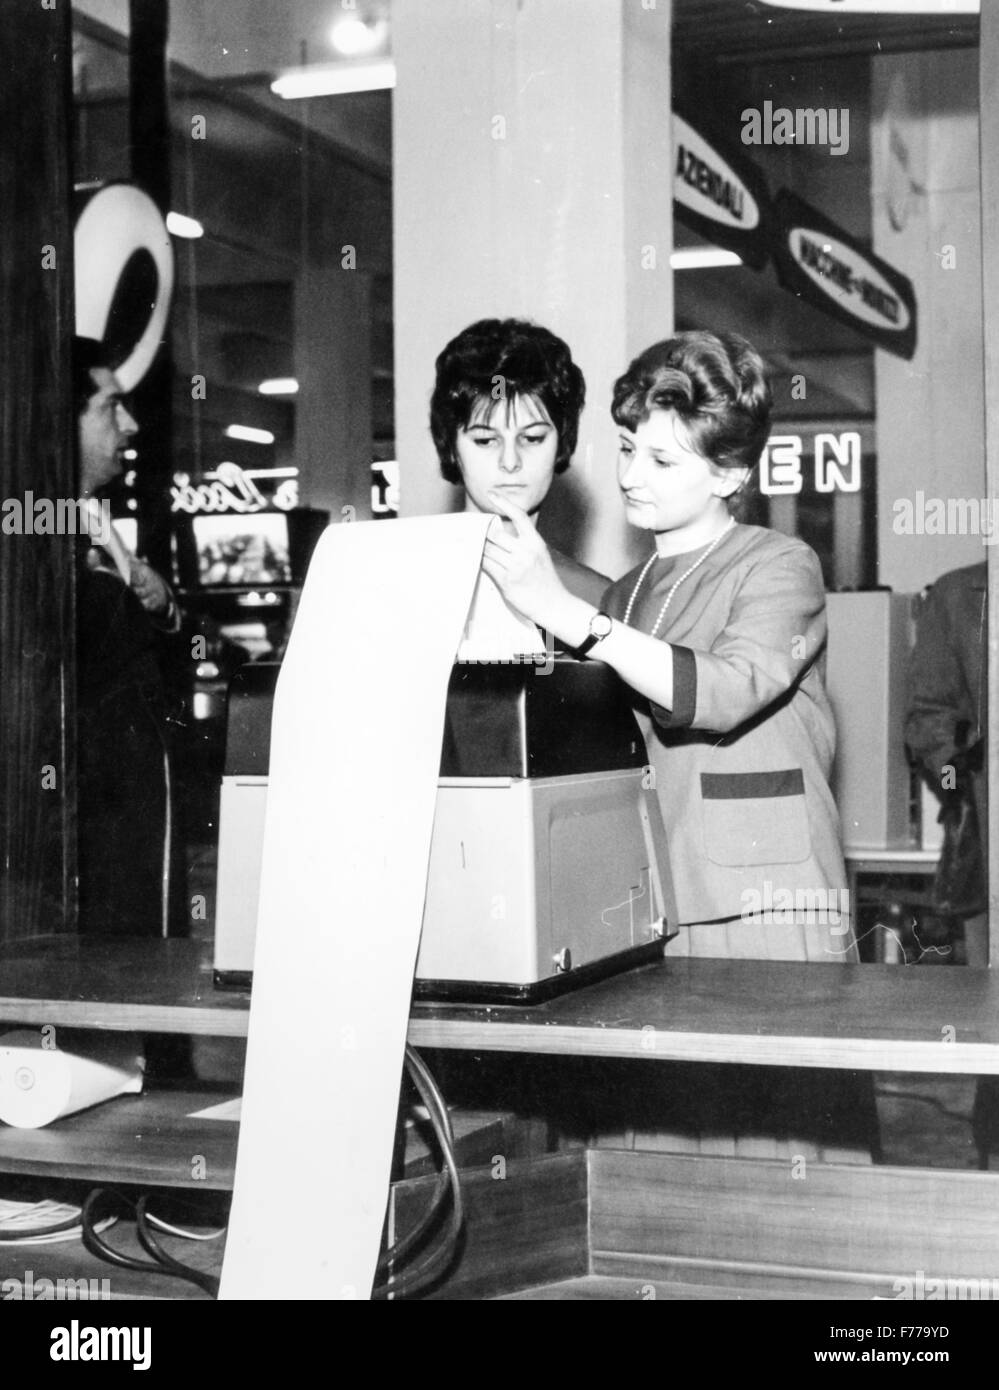 Foire Internationale de Milan deux femmes à un téléimprimeur,Milan,Italie,1962 Banque D'Images